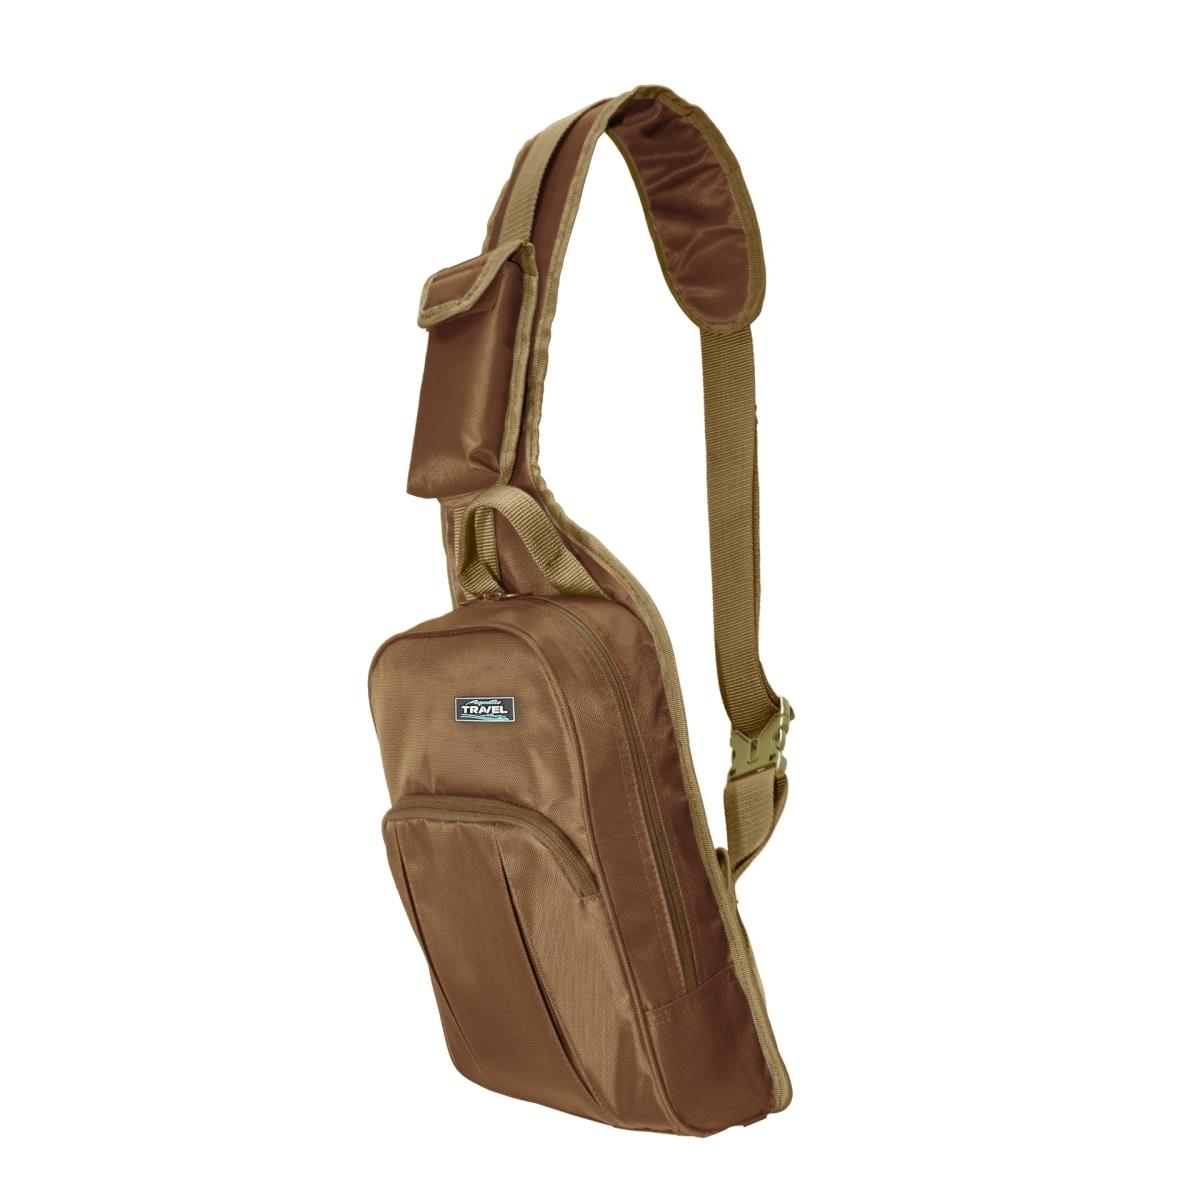 Сумка С-32К коричичневая AQUATIC сумка женская 7797 28 13 29 отд на молнии н карман серый коричневый